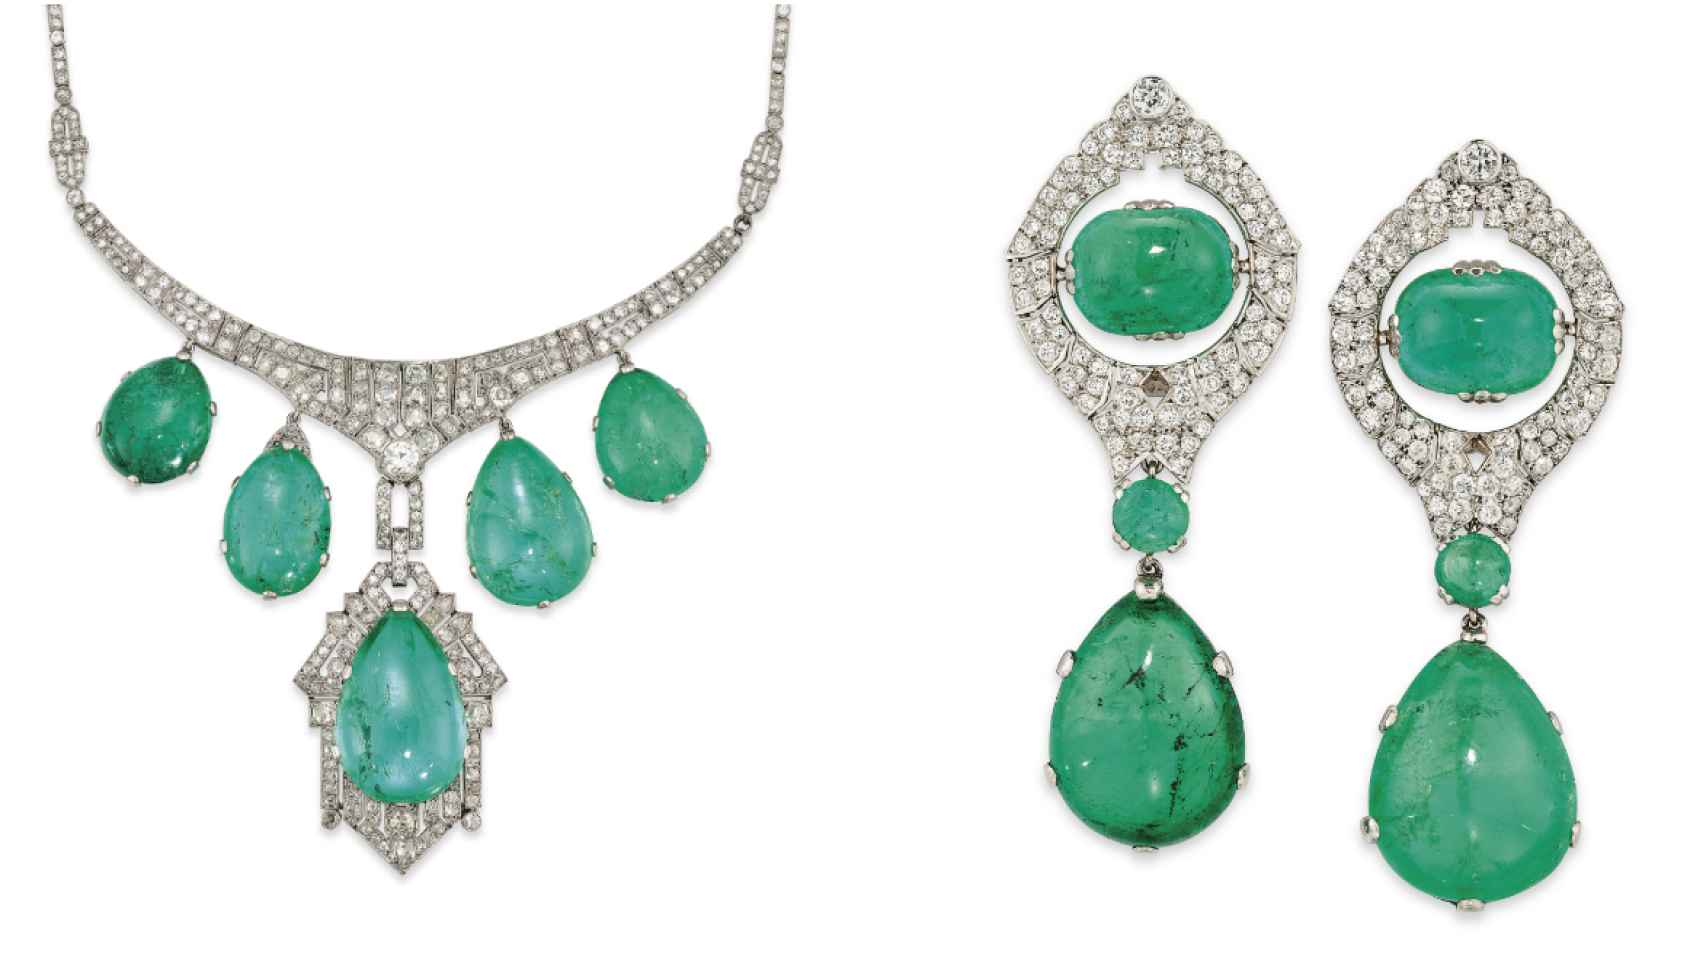 Collar de esmeraldas con gargantilla de platino y diamantes y pendientes a juego.